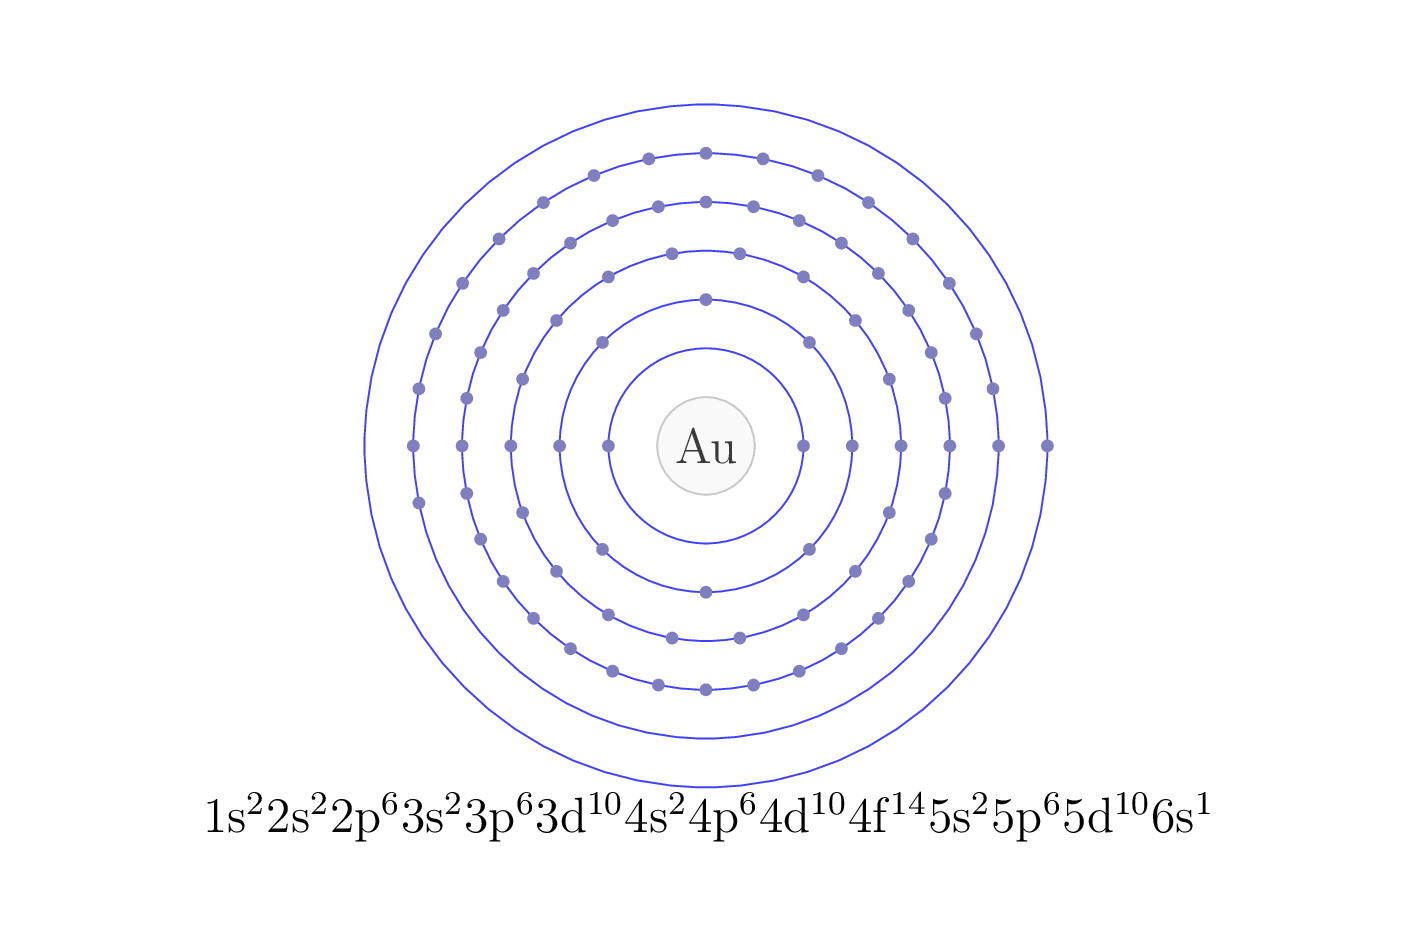 electron configuration of element Au